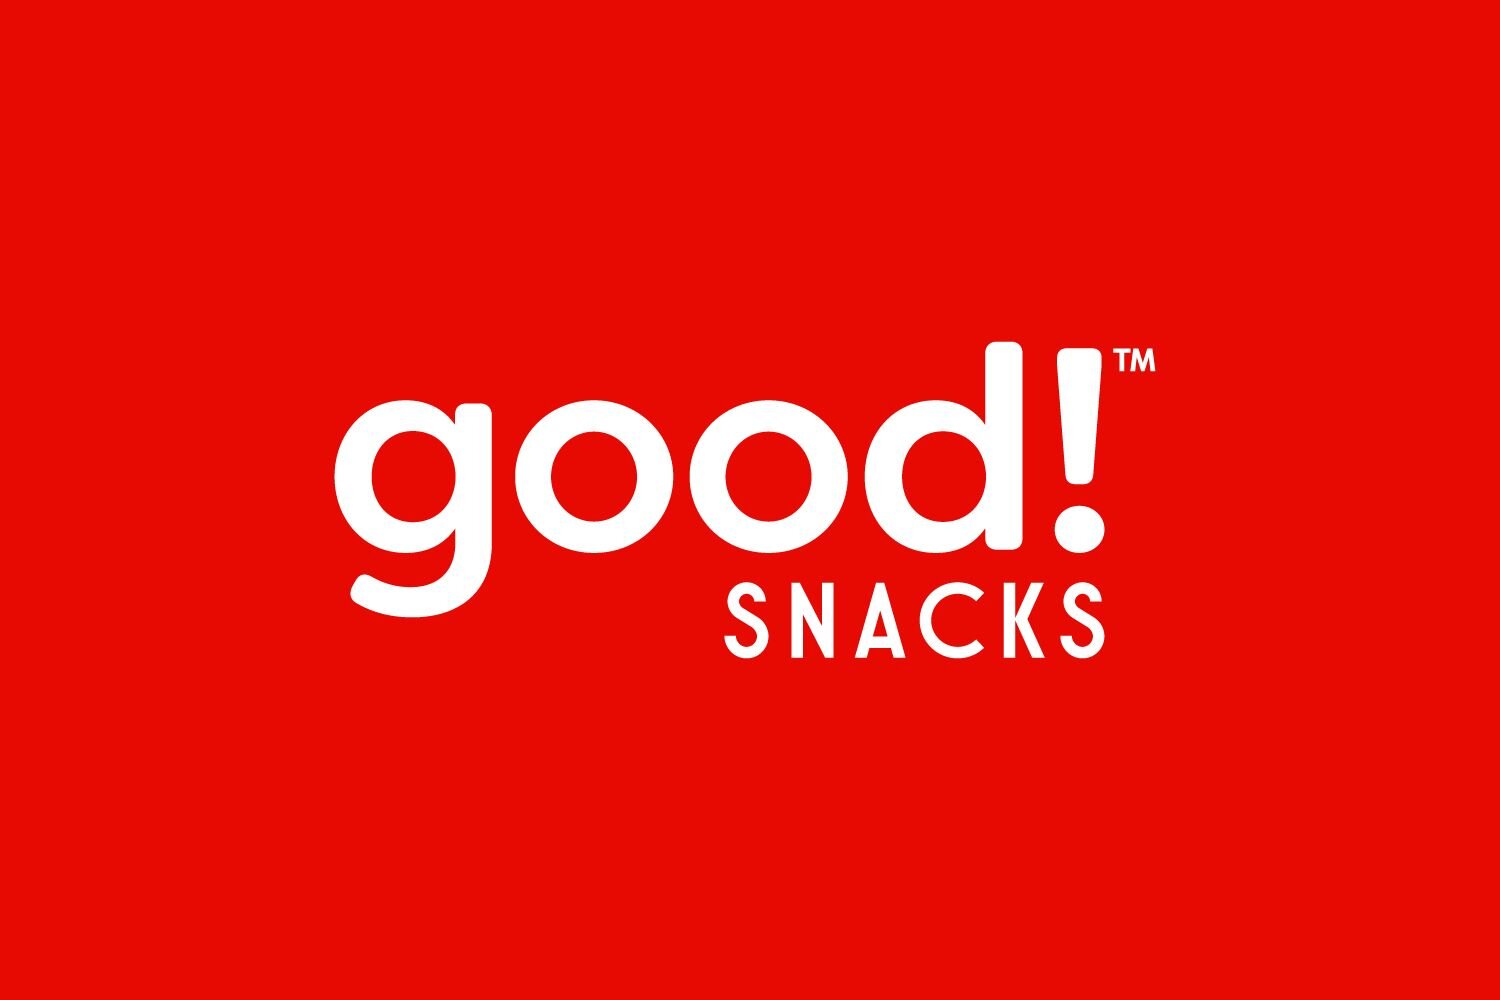 Good Snacks.jpg